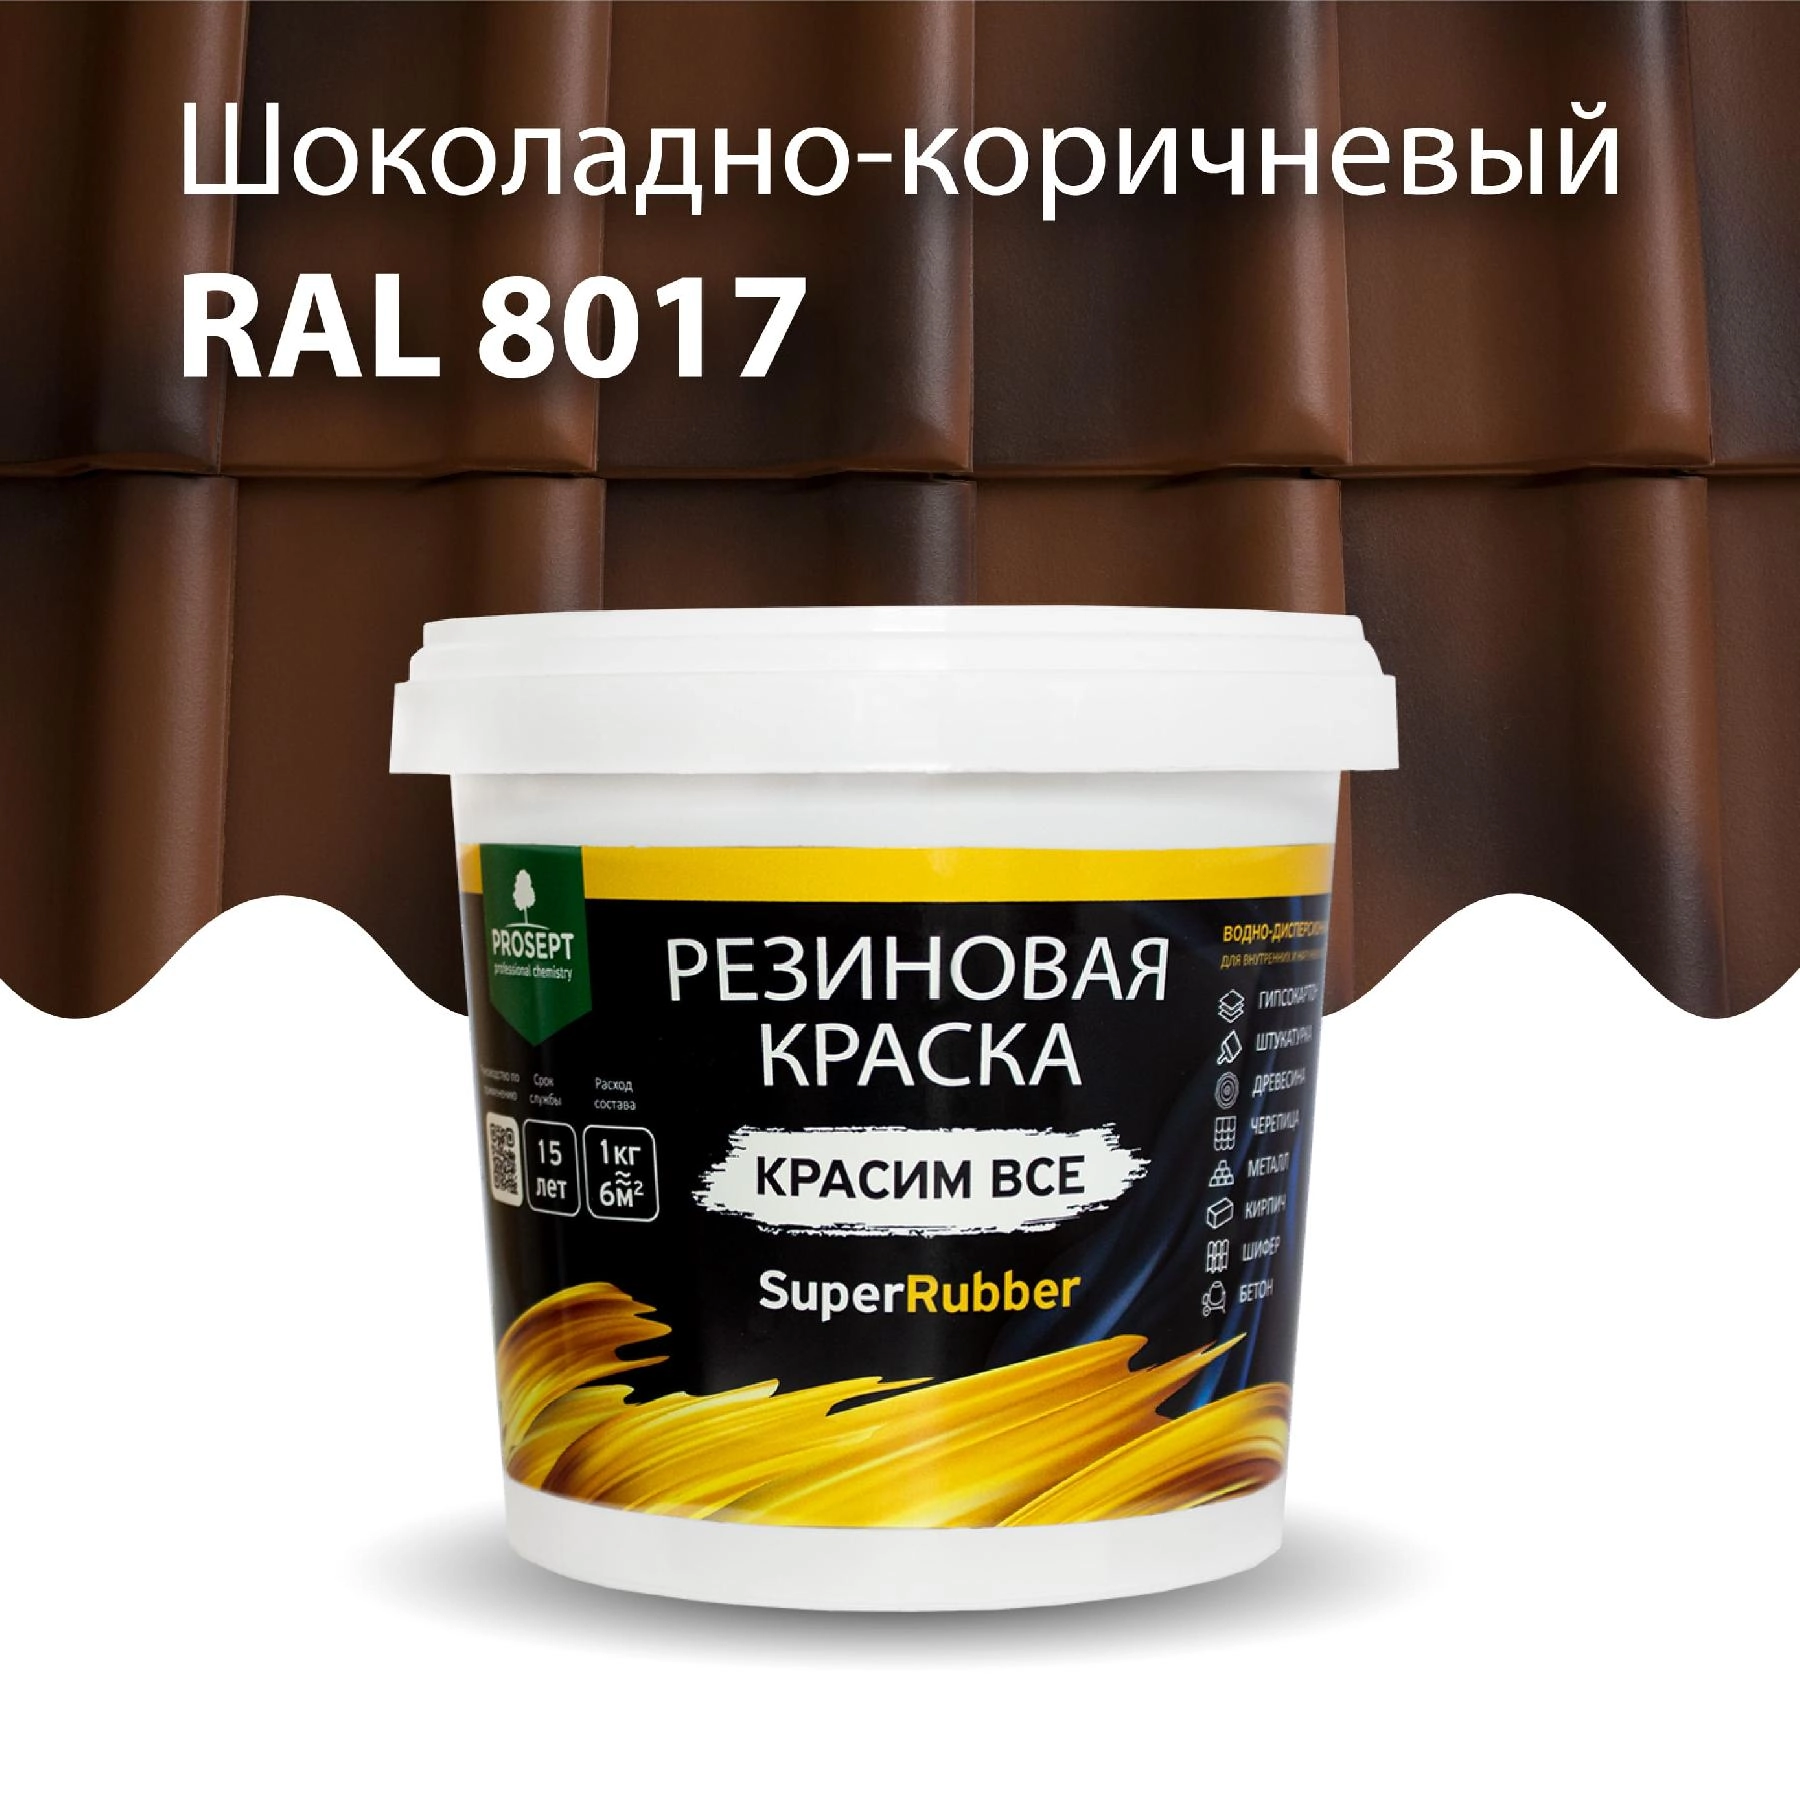 Краска резиновая PROSEPT SuperRubber, шоколадно-коричневый Ral 8017 / 1 кг